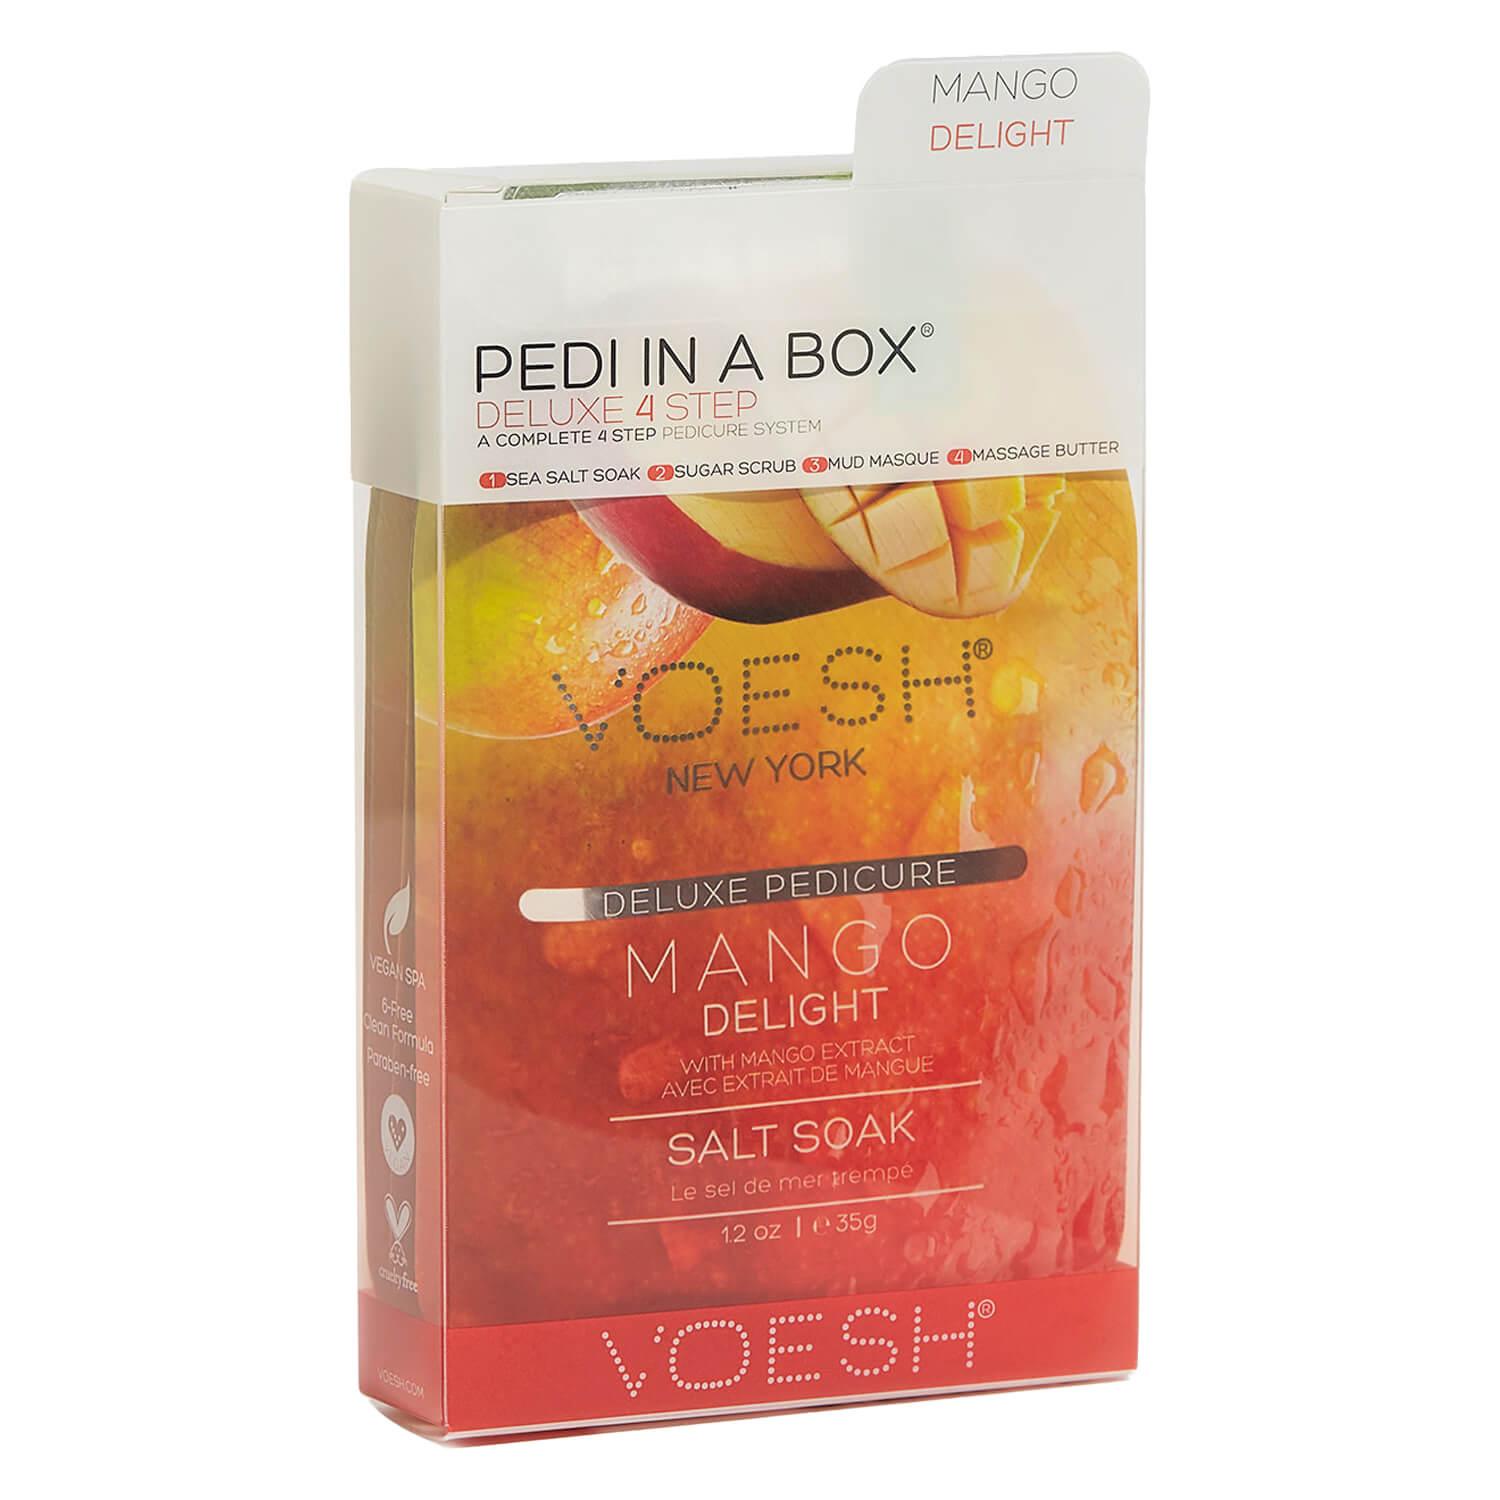 VOESH New York - Pedi In A Box 4 Step Mango Delight